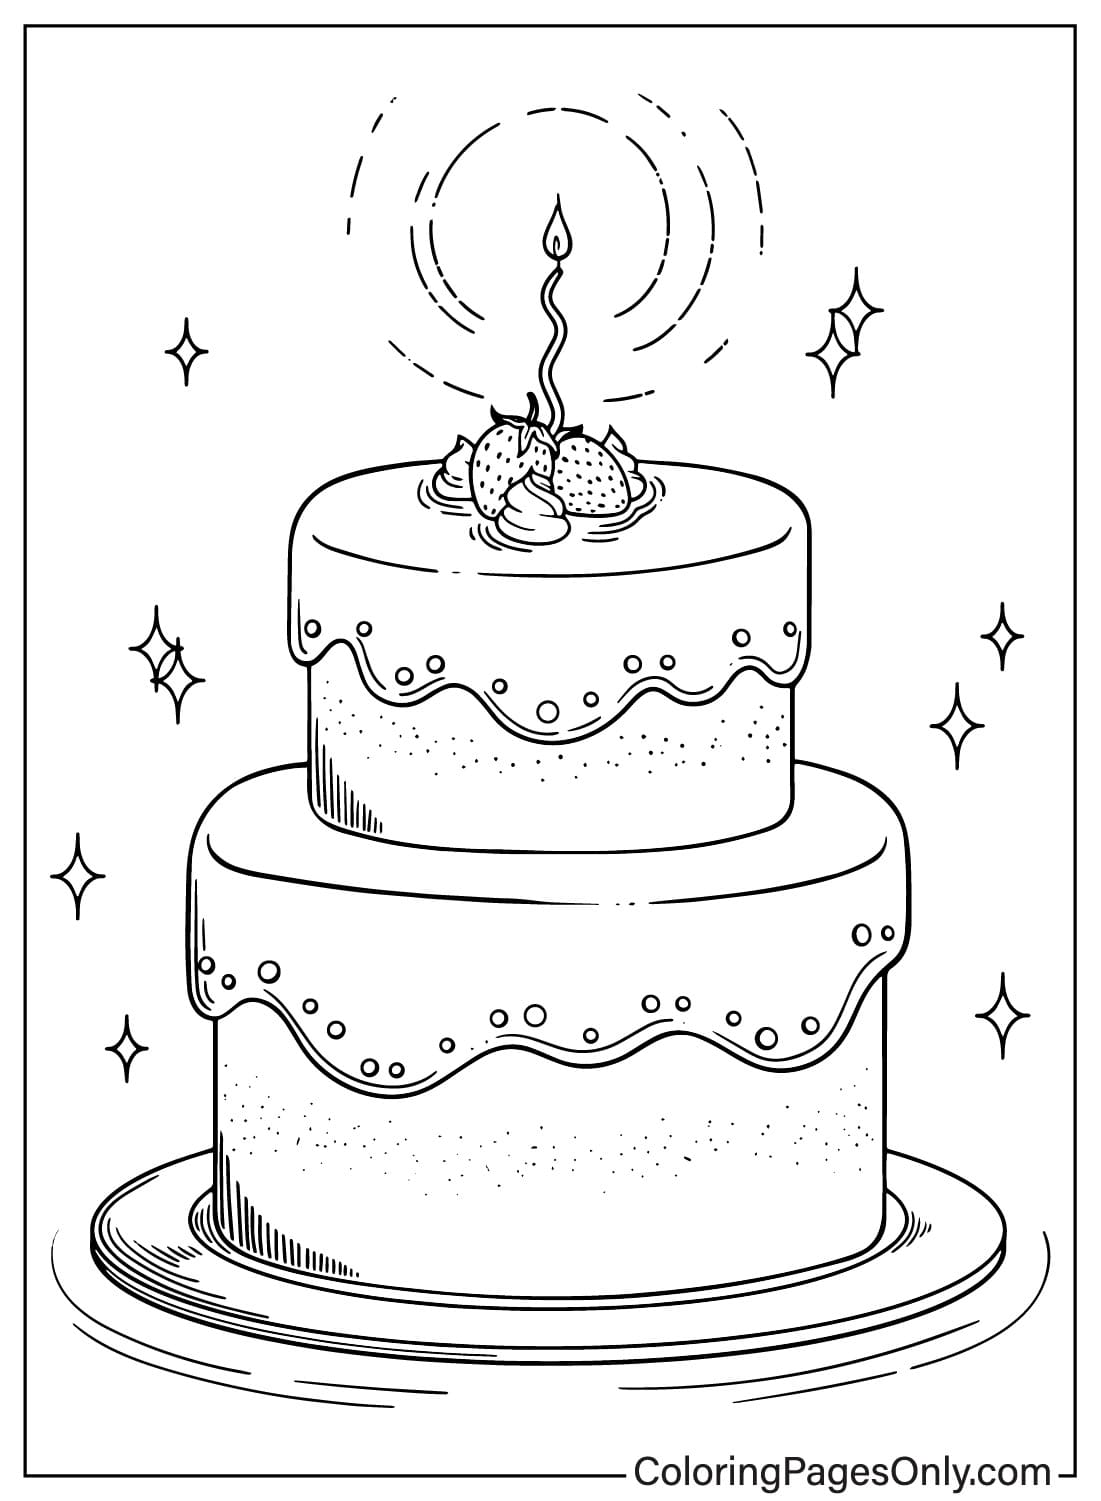 Раскраска торт ко дню рождения, которую можно распечатать из торта ко дню рождения